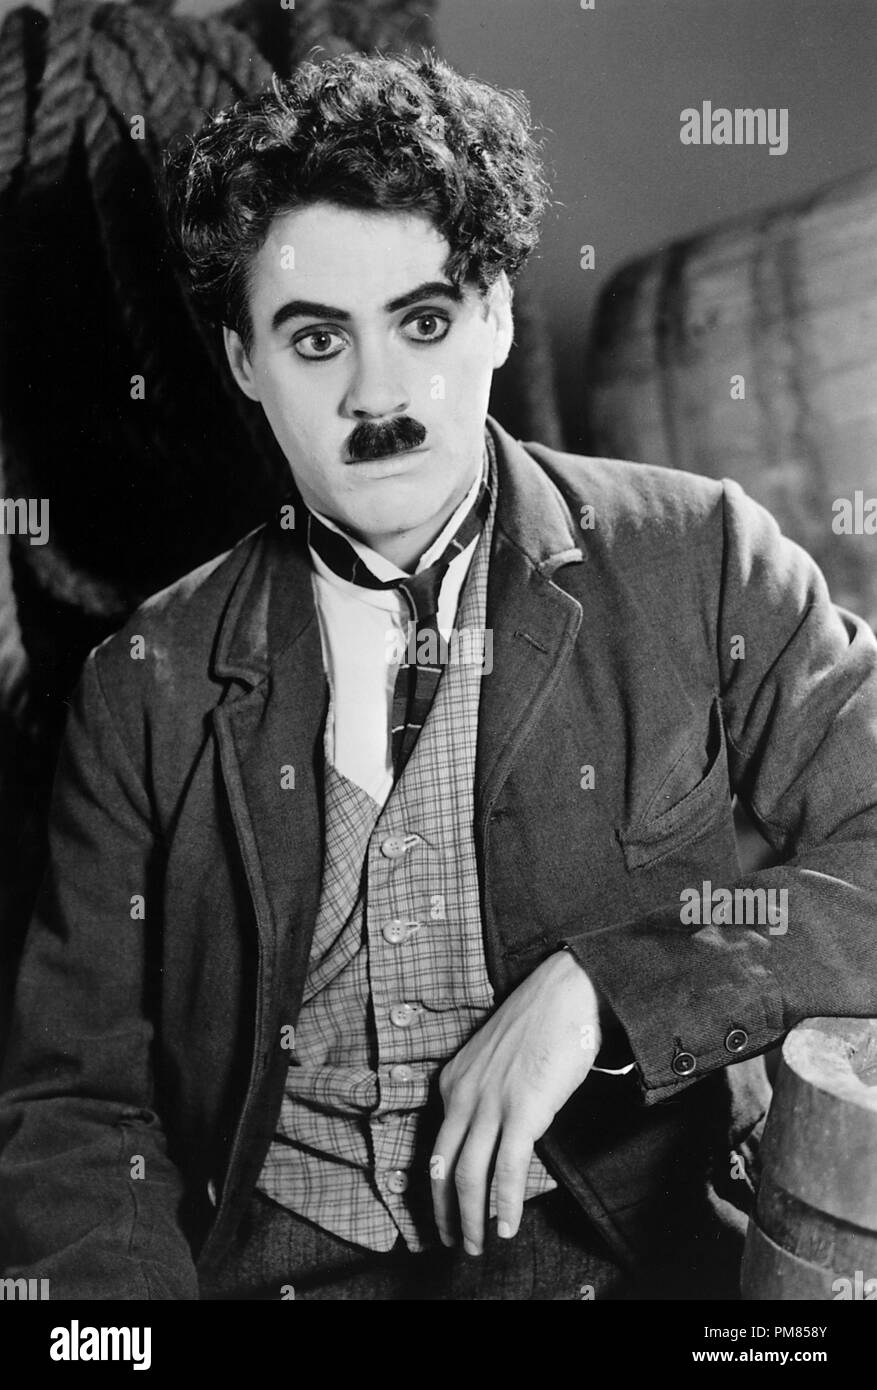 Film Still oder Werbung noch von 'Chaplin' Robert Downey Jr. © 1992 Tri-Star Alle Rechte vorbehalten Datei Referenz # 31487 048 THA für die redaktionelle Nutzung nur Stockfoto